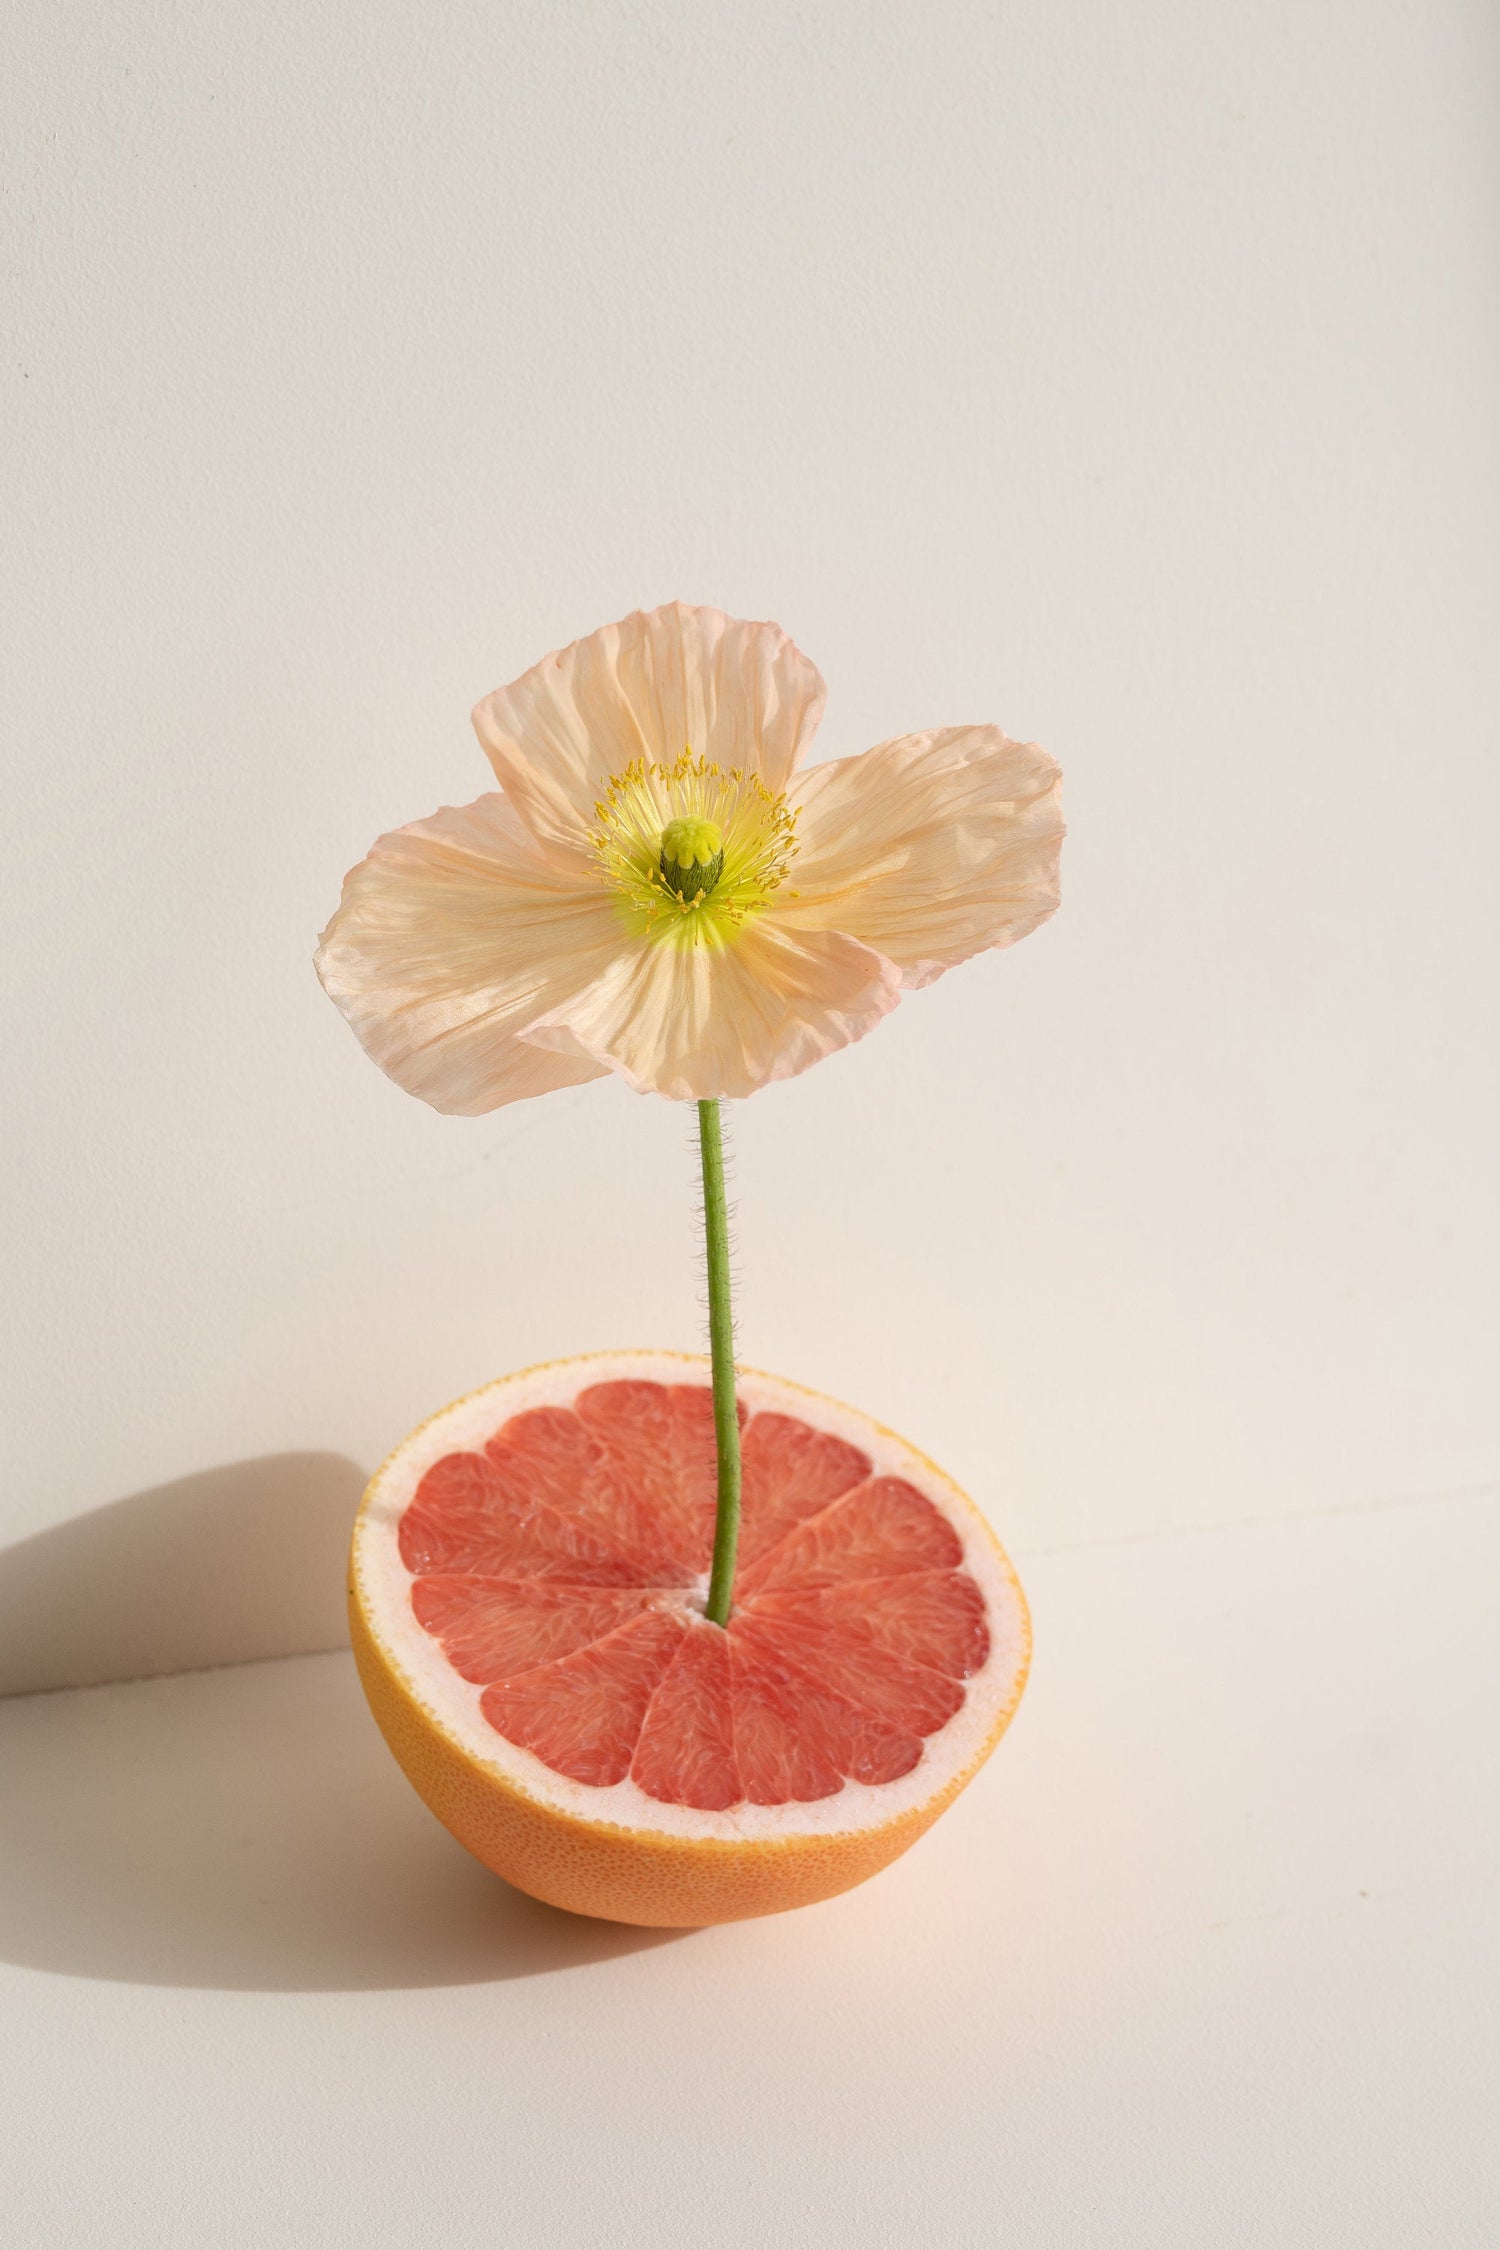 A delicate flower in a cut orange.